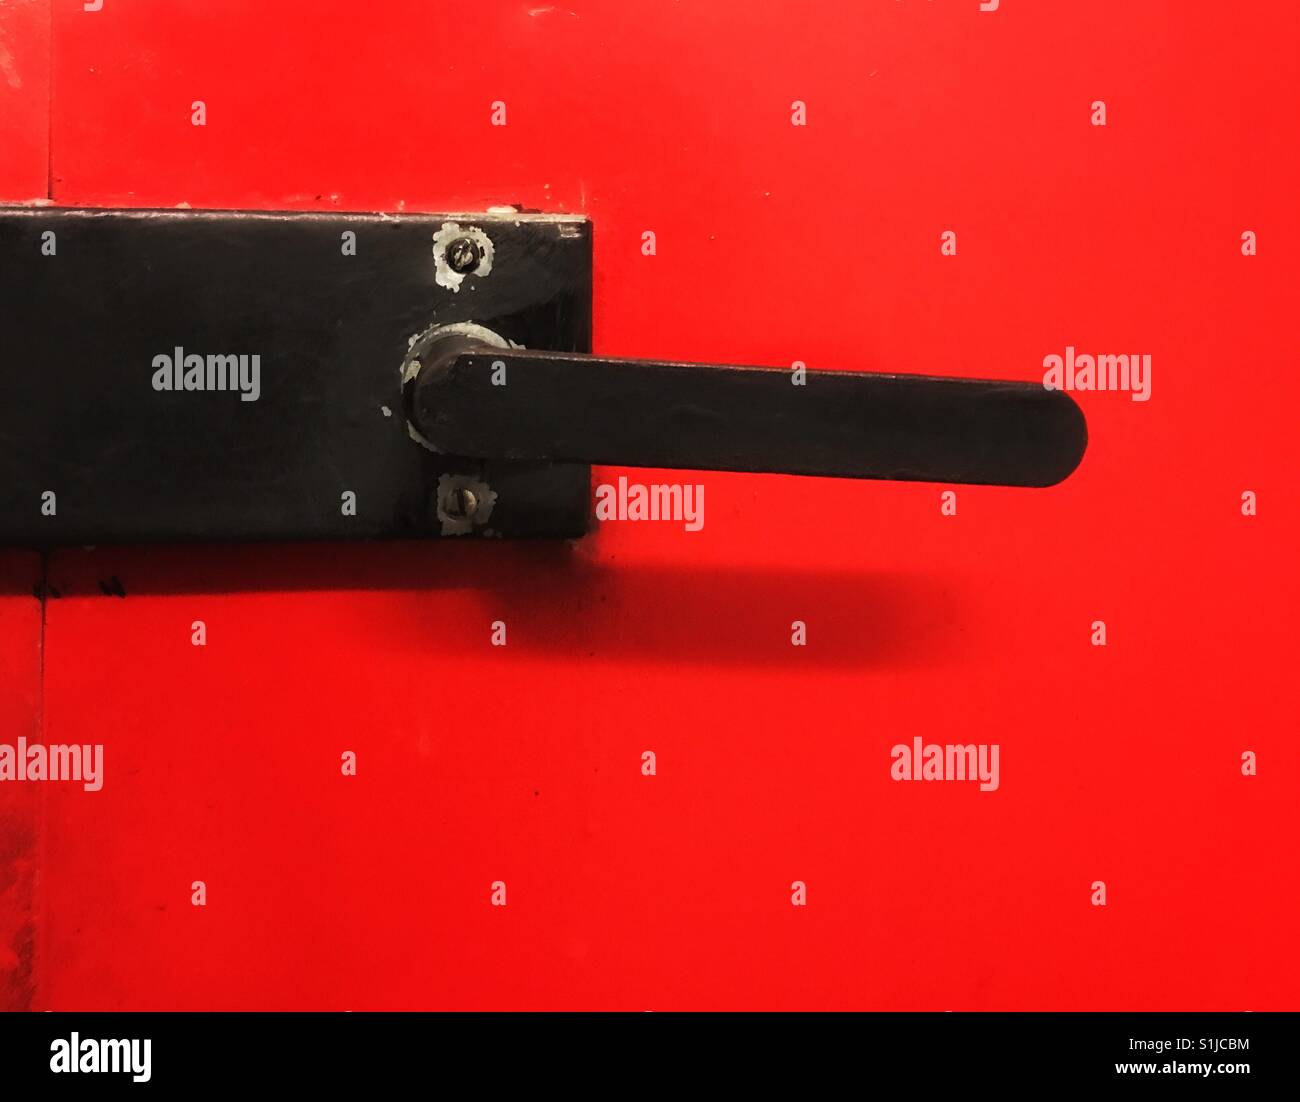 Black door knob on a red door. Close up shot Stock Photo